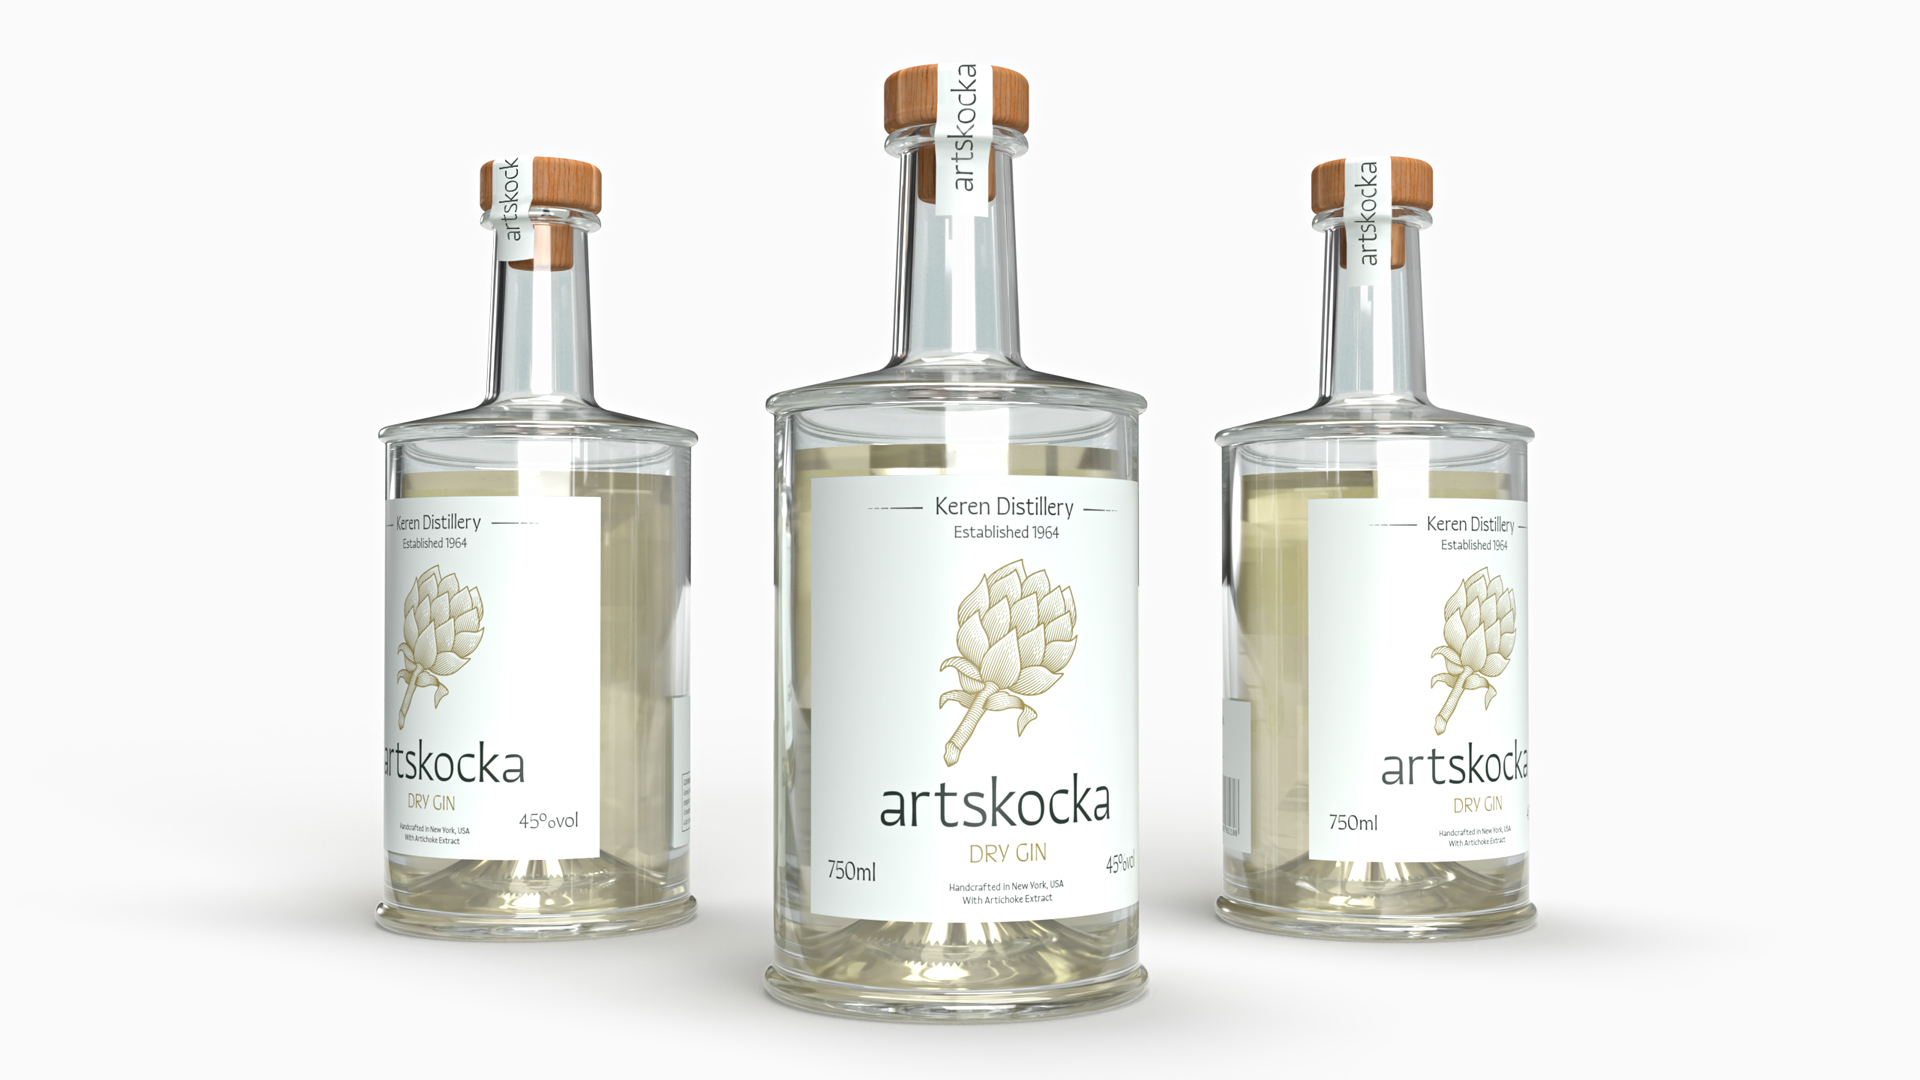 Artisanal Gin Bottling and Labeling Design for Artskocka Gin